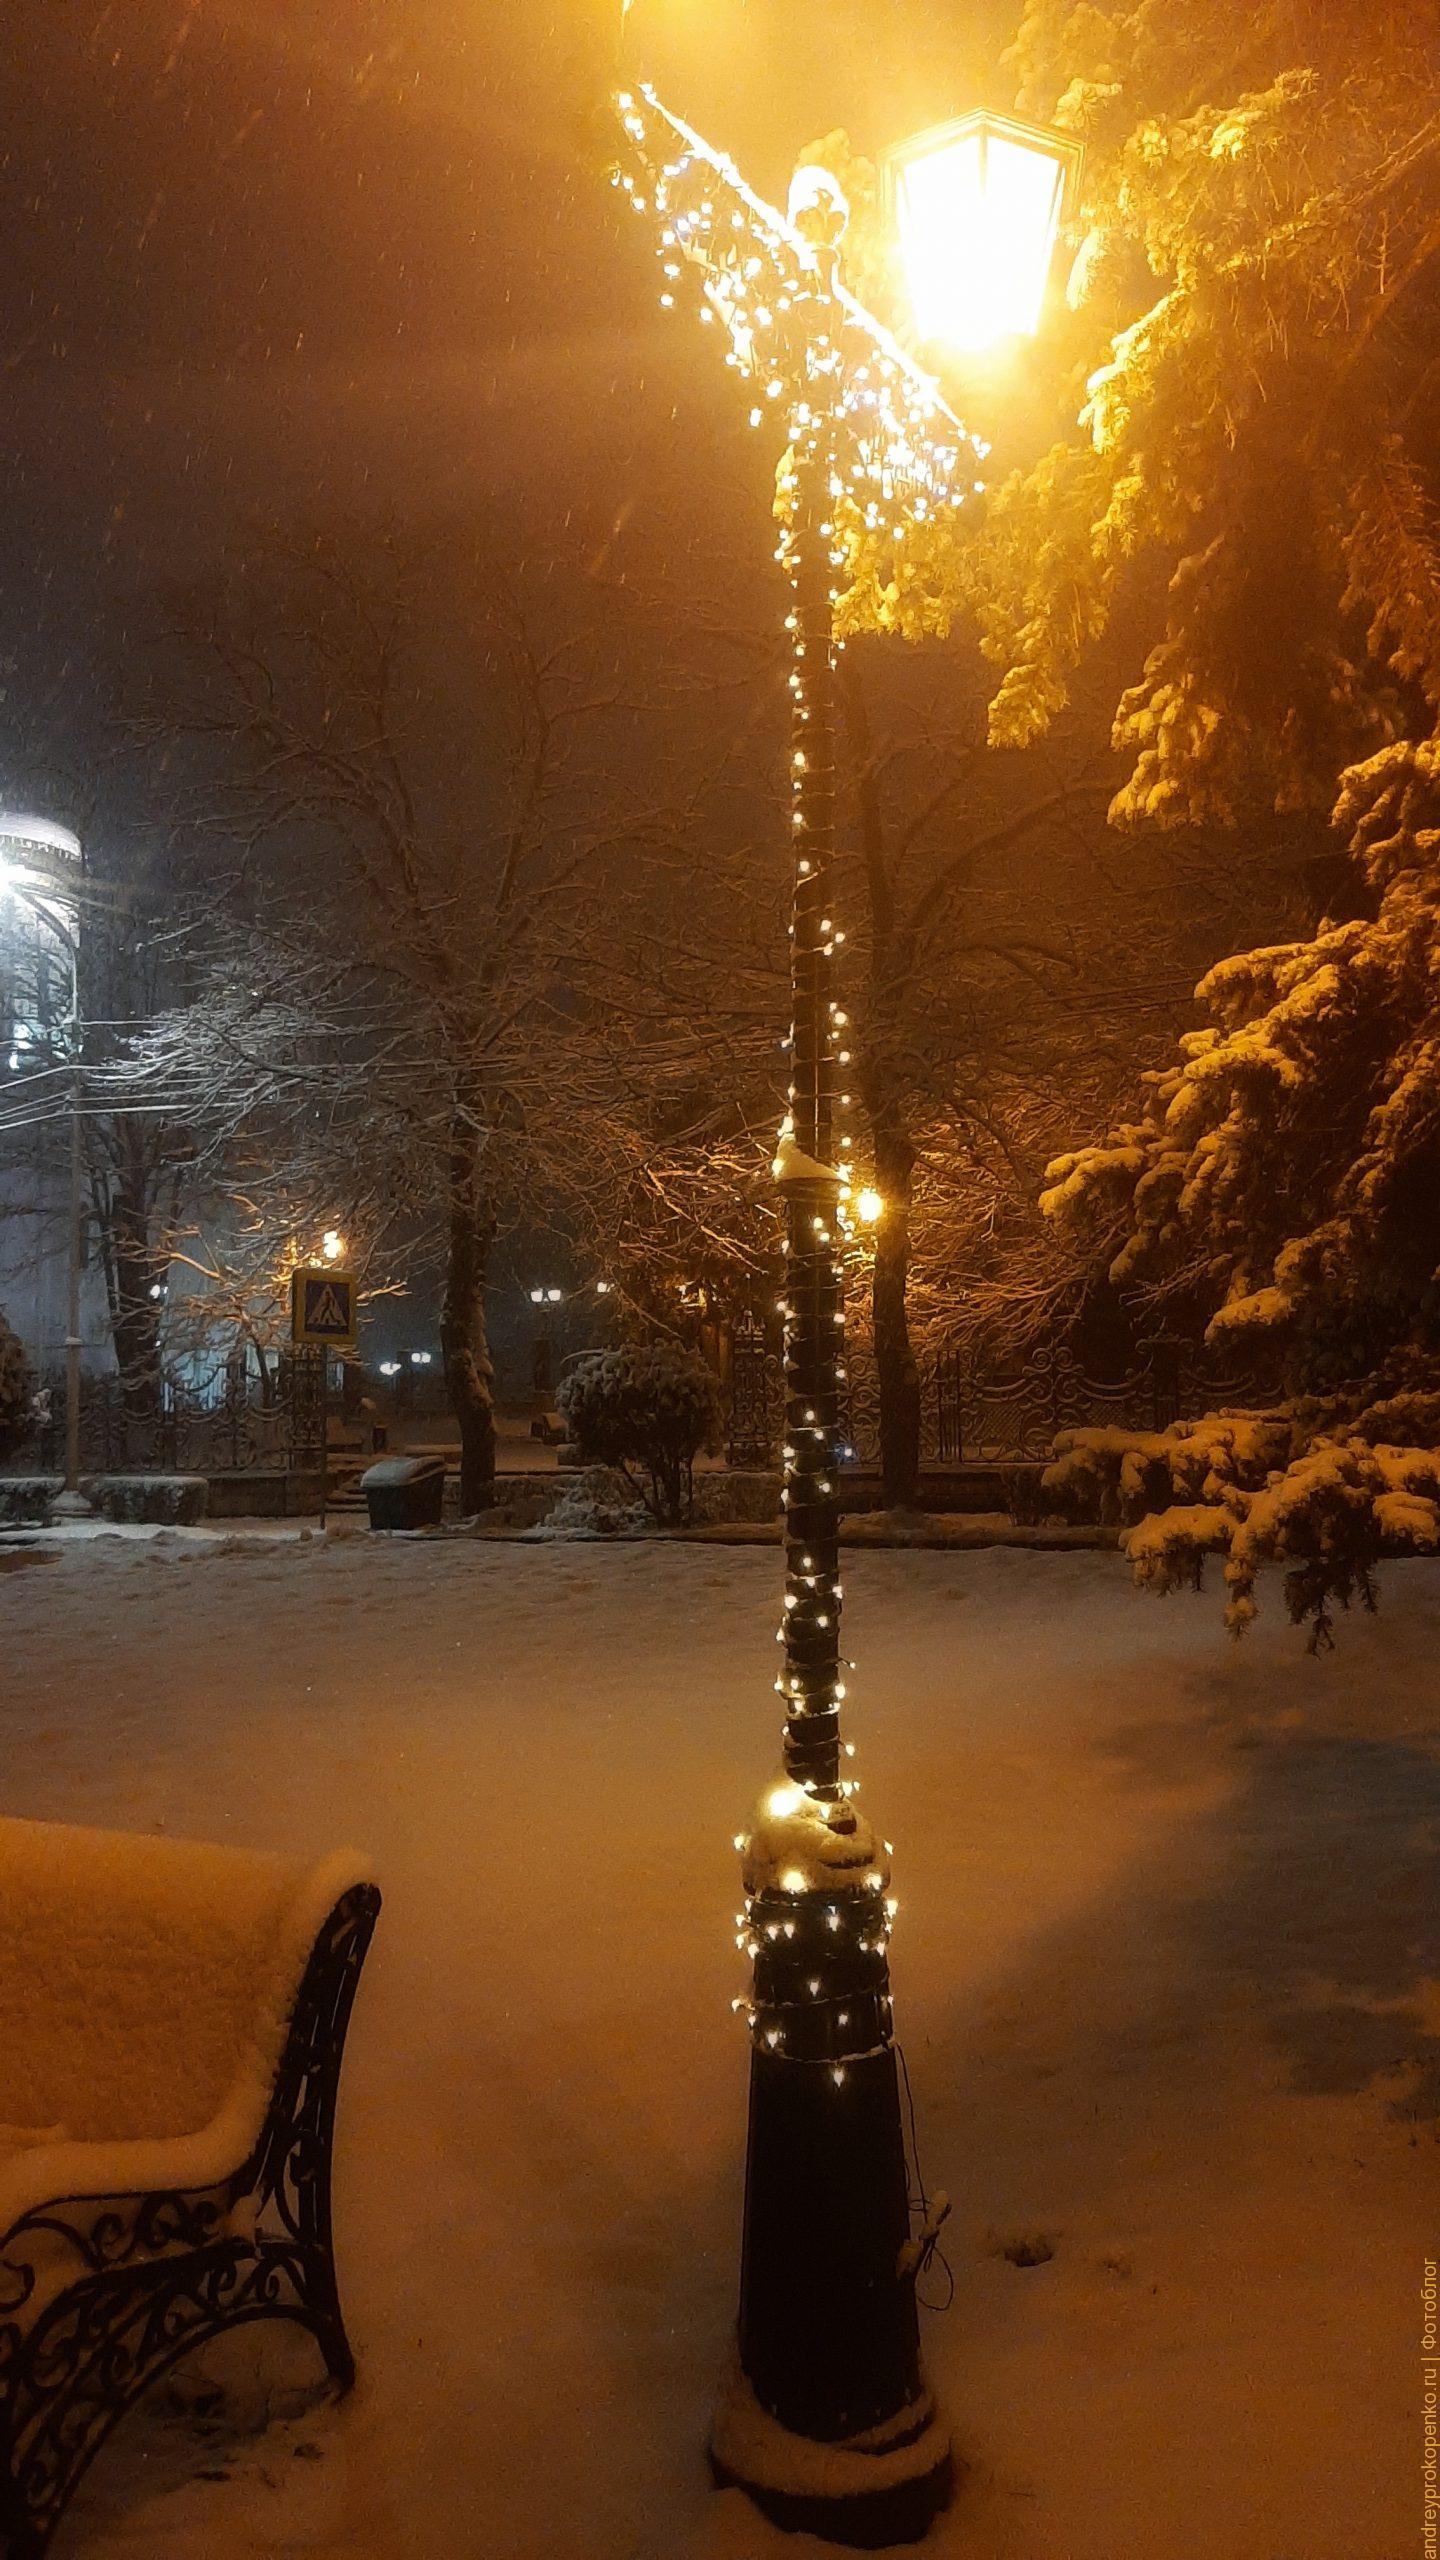 Легендарный парк Цветник во время снегопада. Прогноз погоды такого не обещал